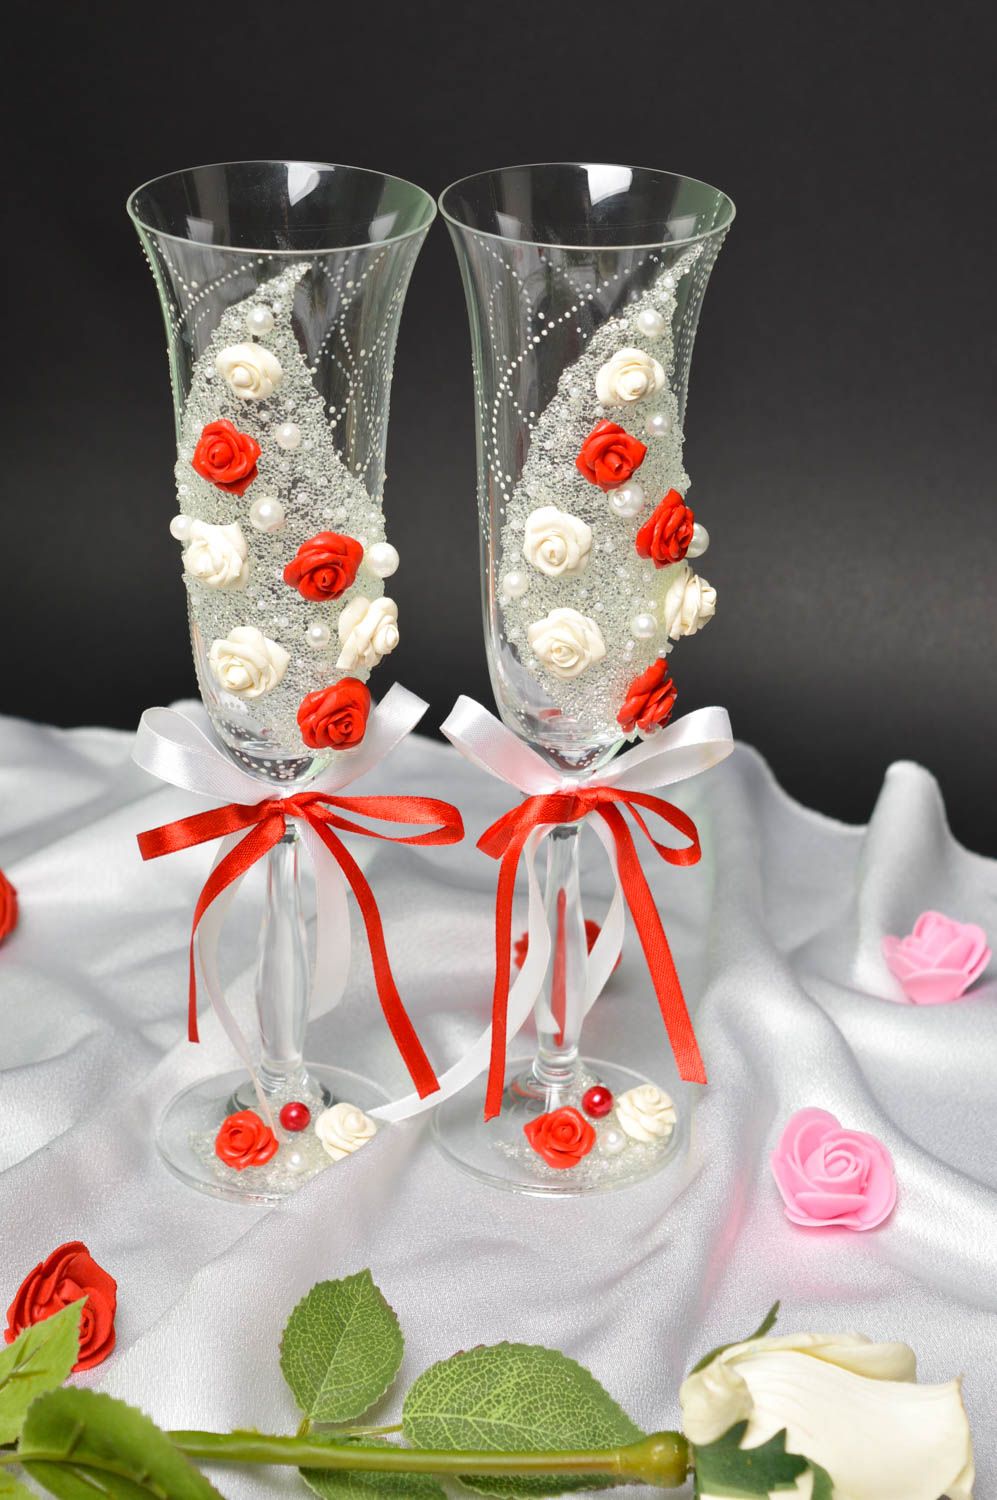 Copas de novios con rosas artesanales detalles de boda copas decoradas para boda foto 1